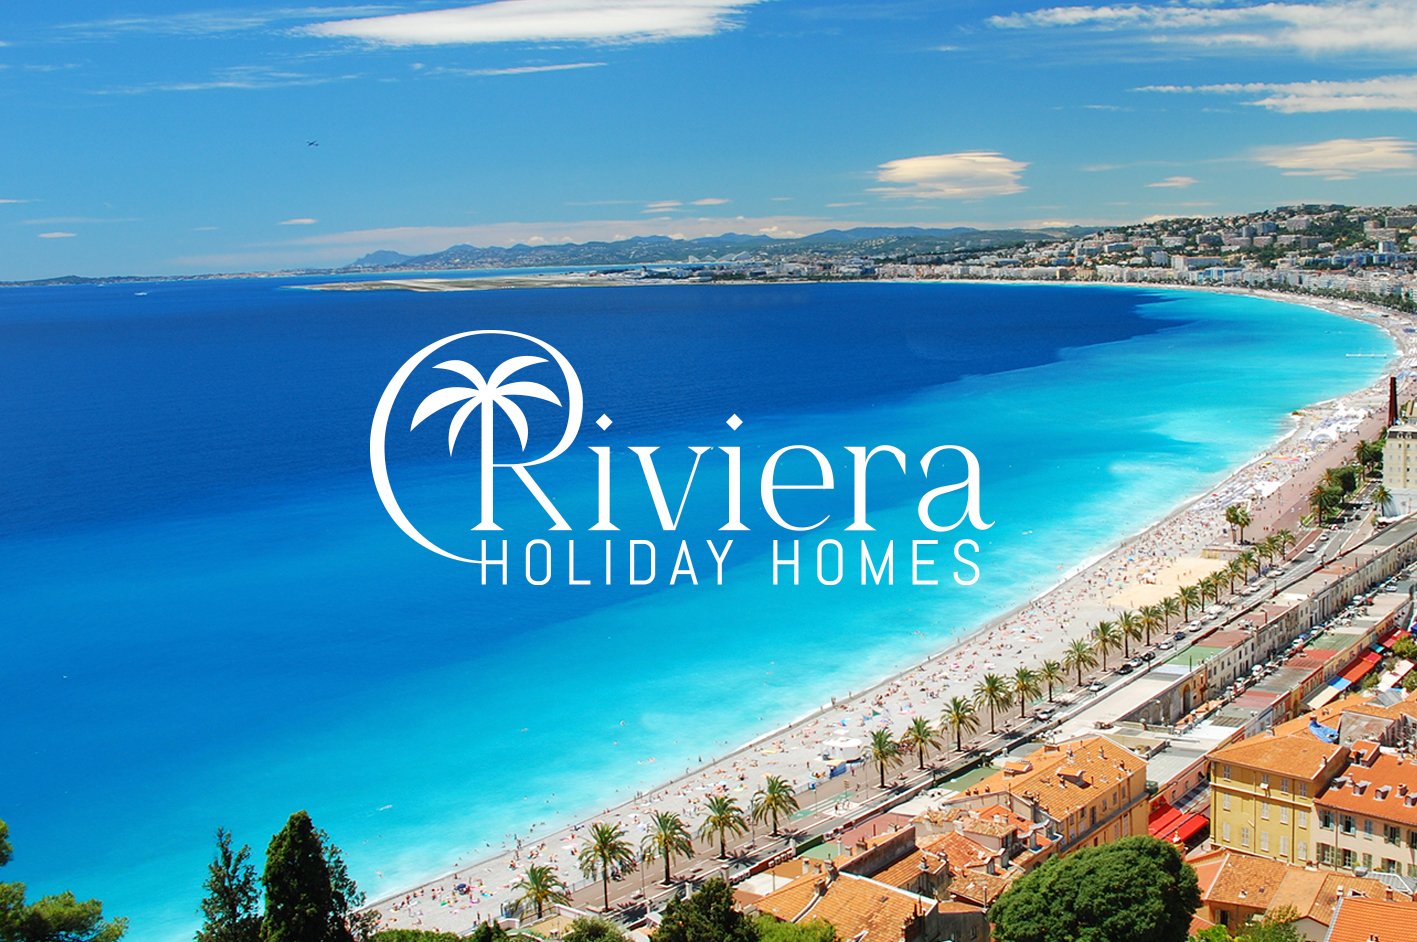 Access Base Sud travail sur le référencement du site internet Riviera Holiday Homes, le spécialiste de la location saisonnière sur la Côte d’Azur